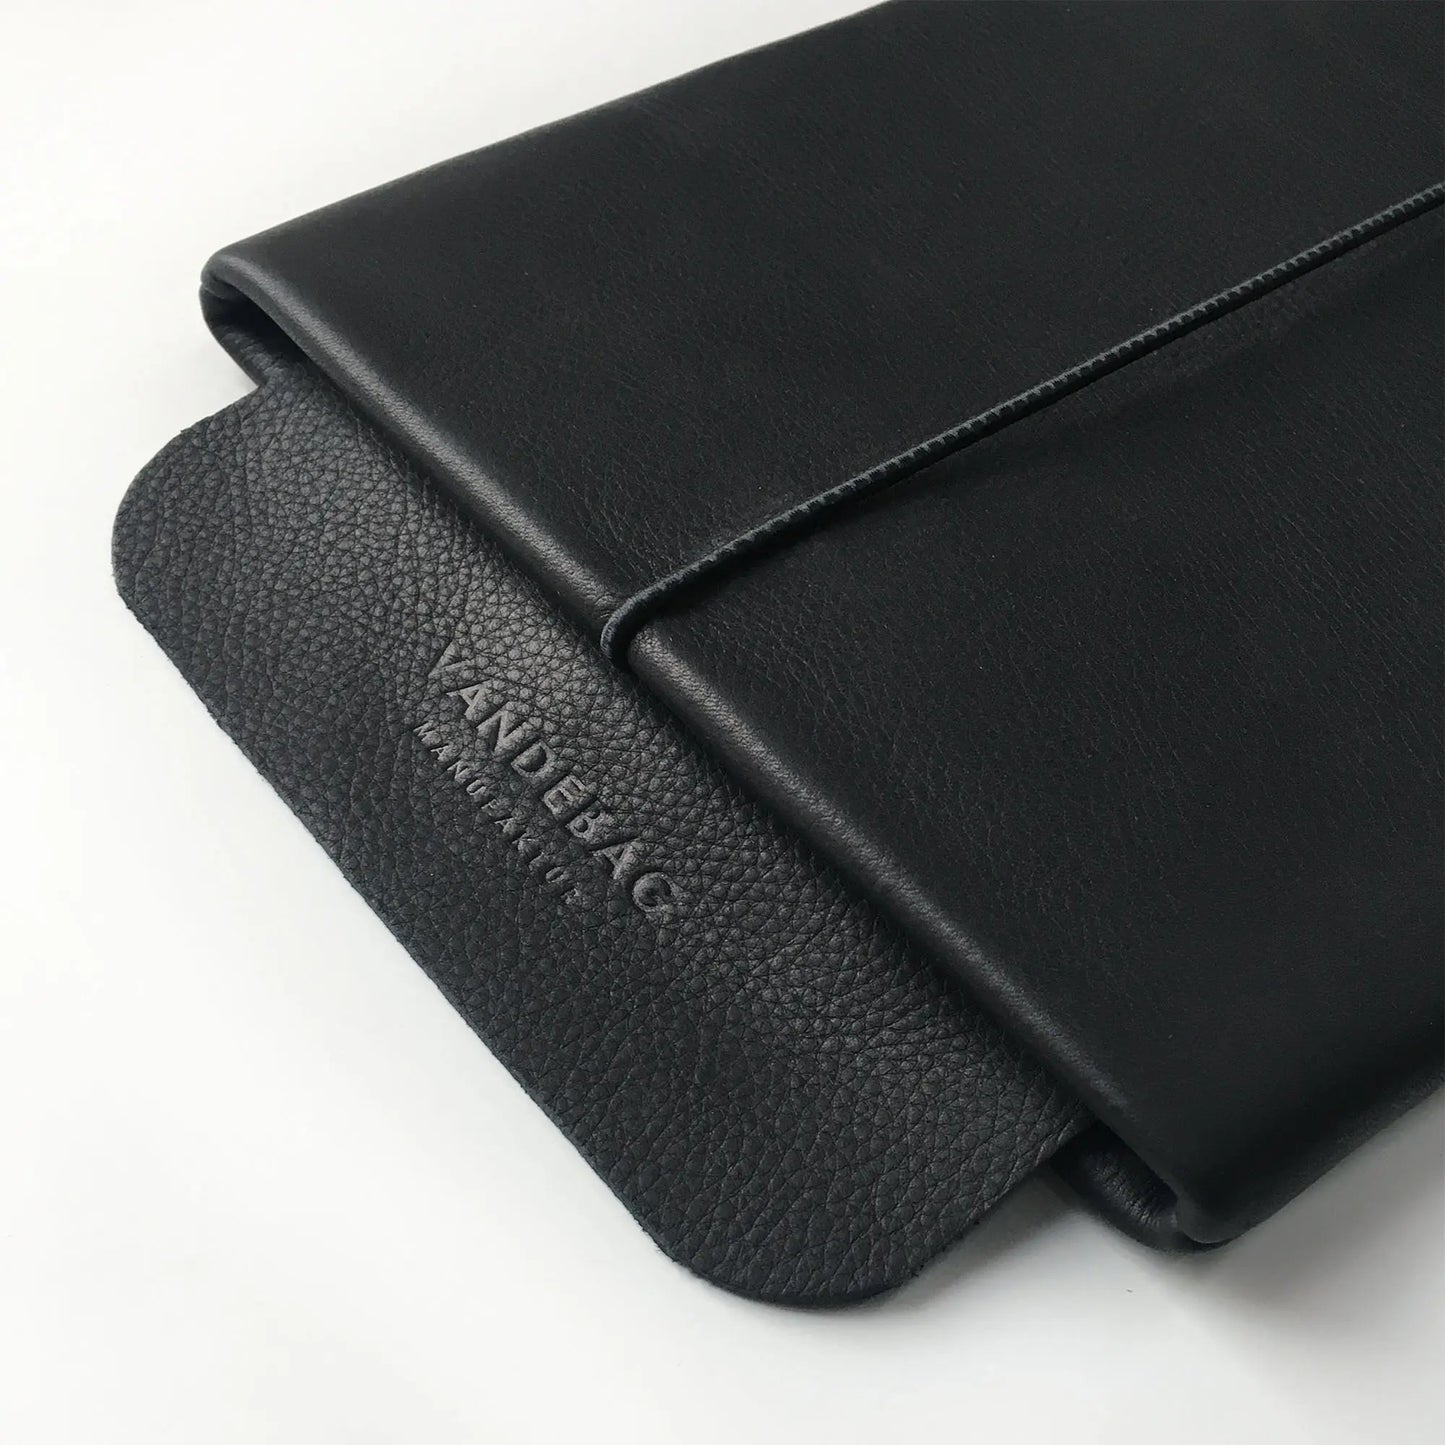 schwarze iPad Lederhülle mit geprägter Verschlussklappe aus Leder